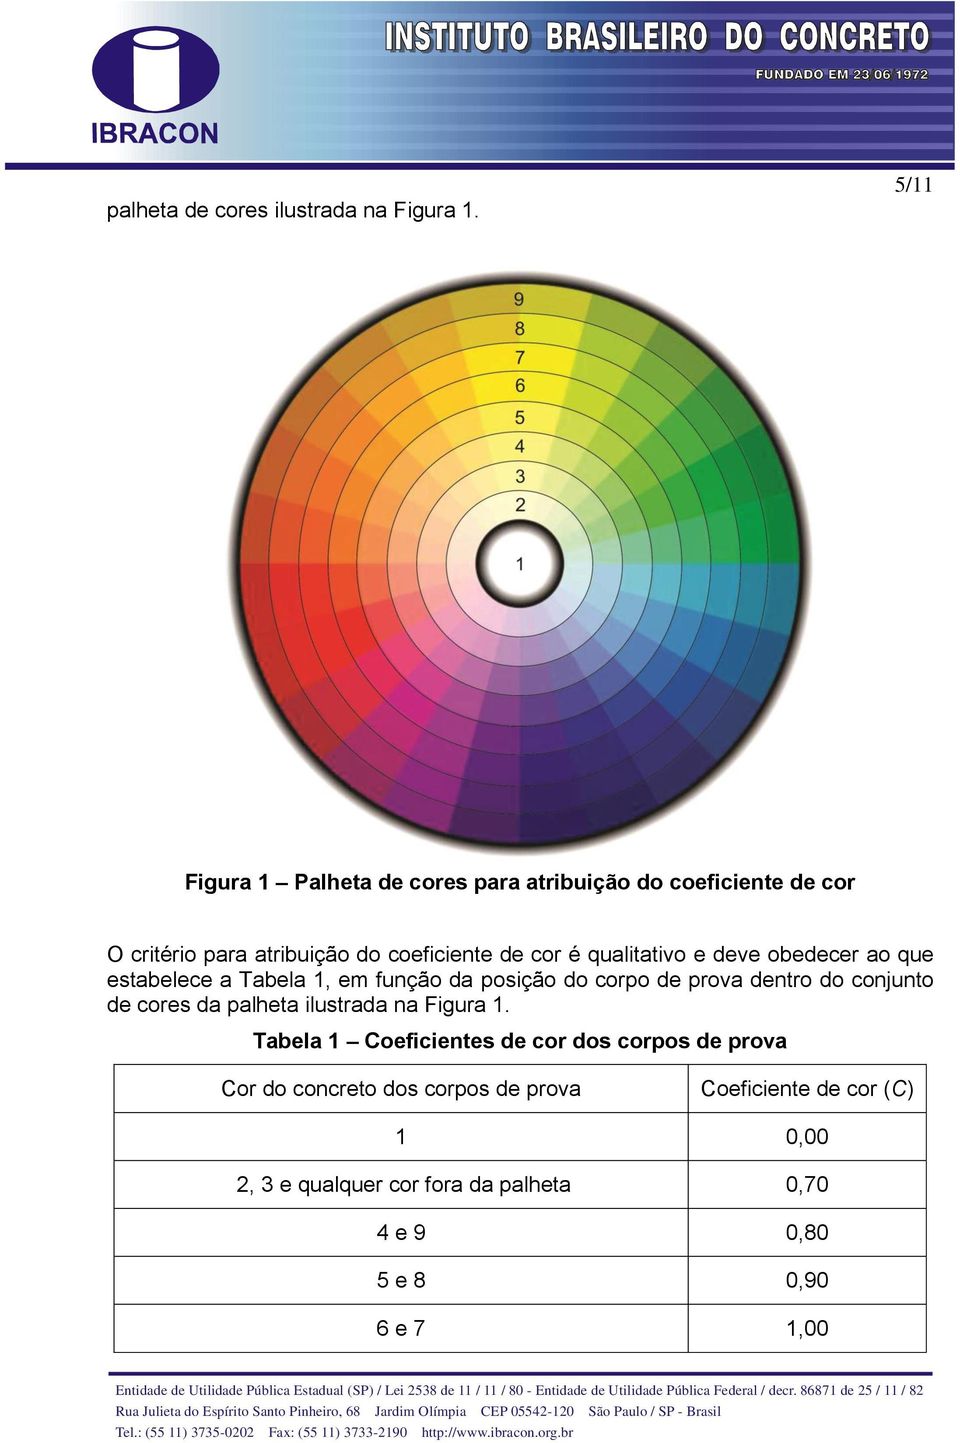 qualitativo e deve obedecer ao que estabelece a Tabela 1, em função da posição do corpo de prova dentro do conjunto de cores